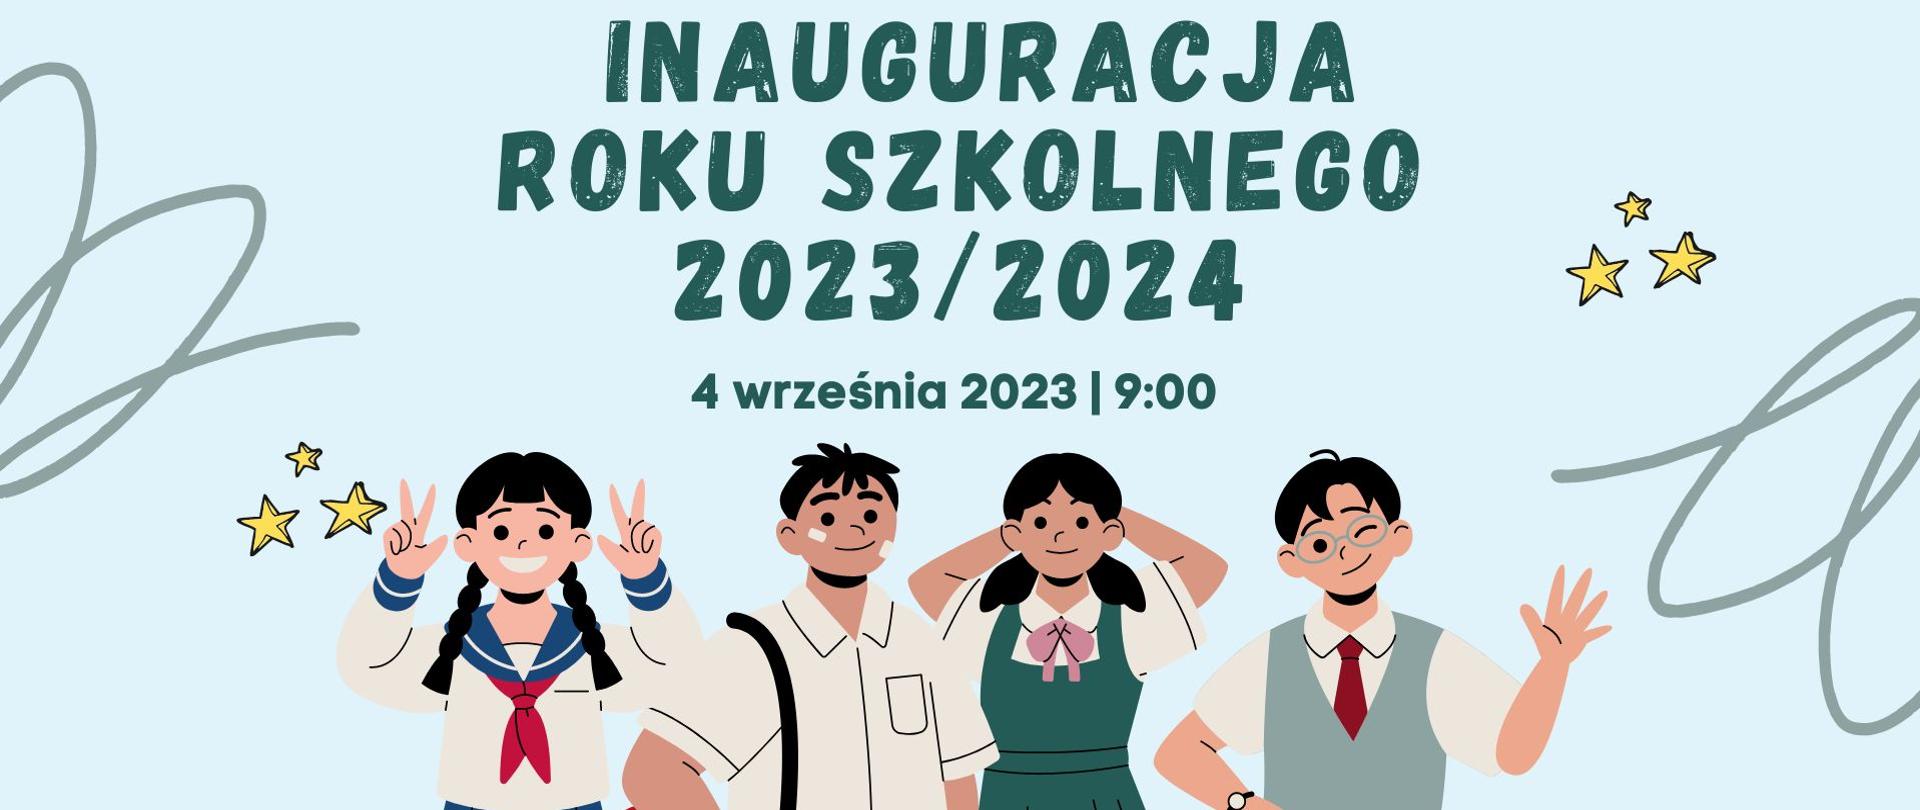 Inauguracja Roku Szkolnego 2023/2024